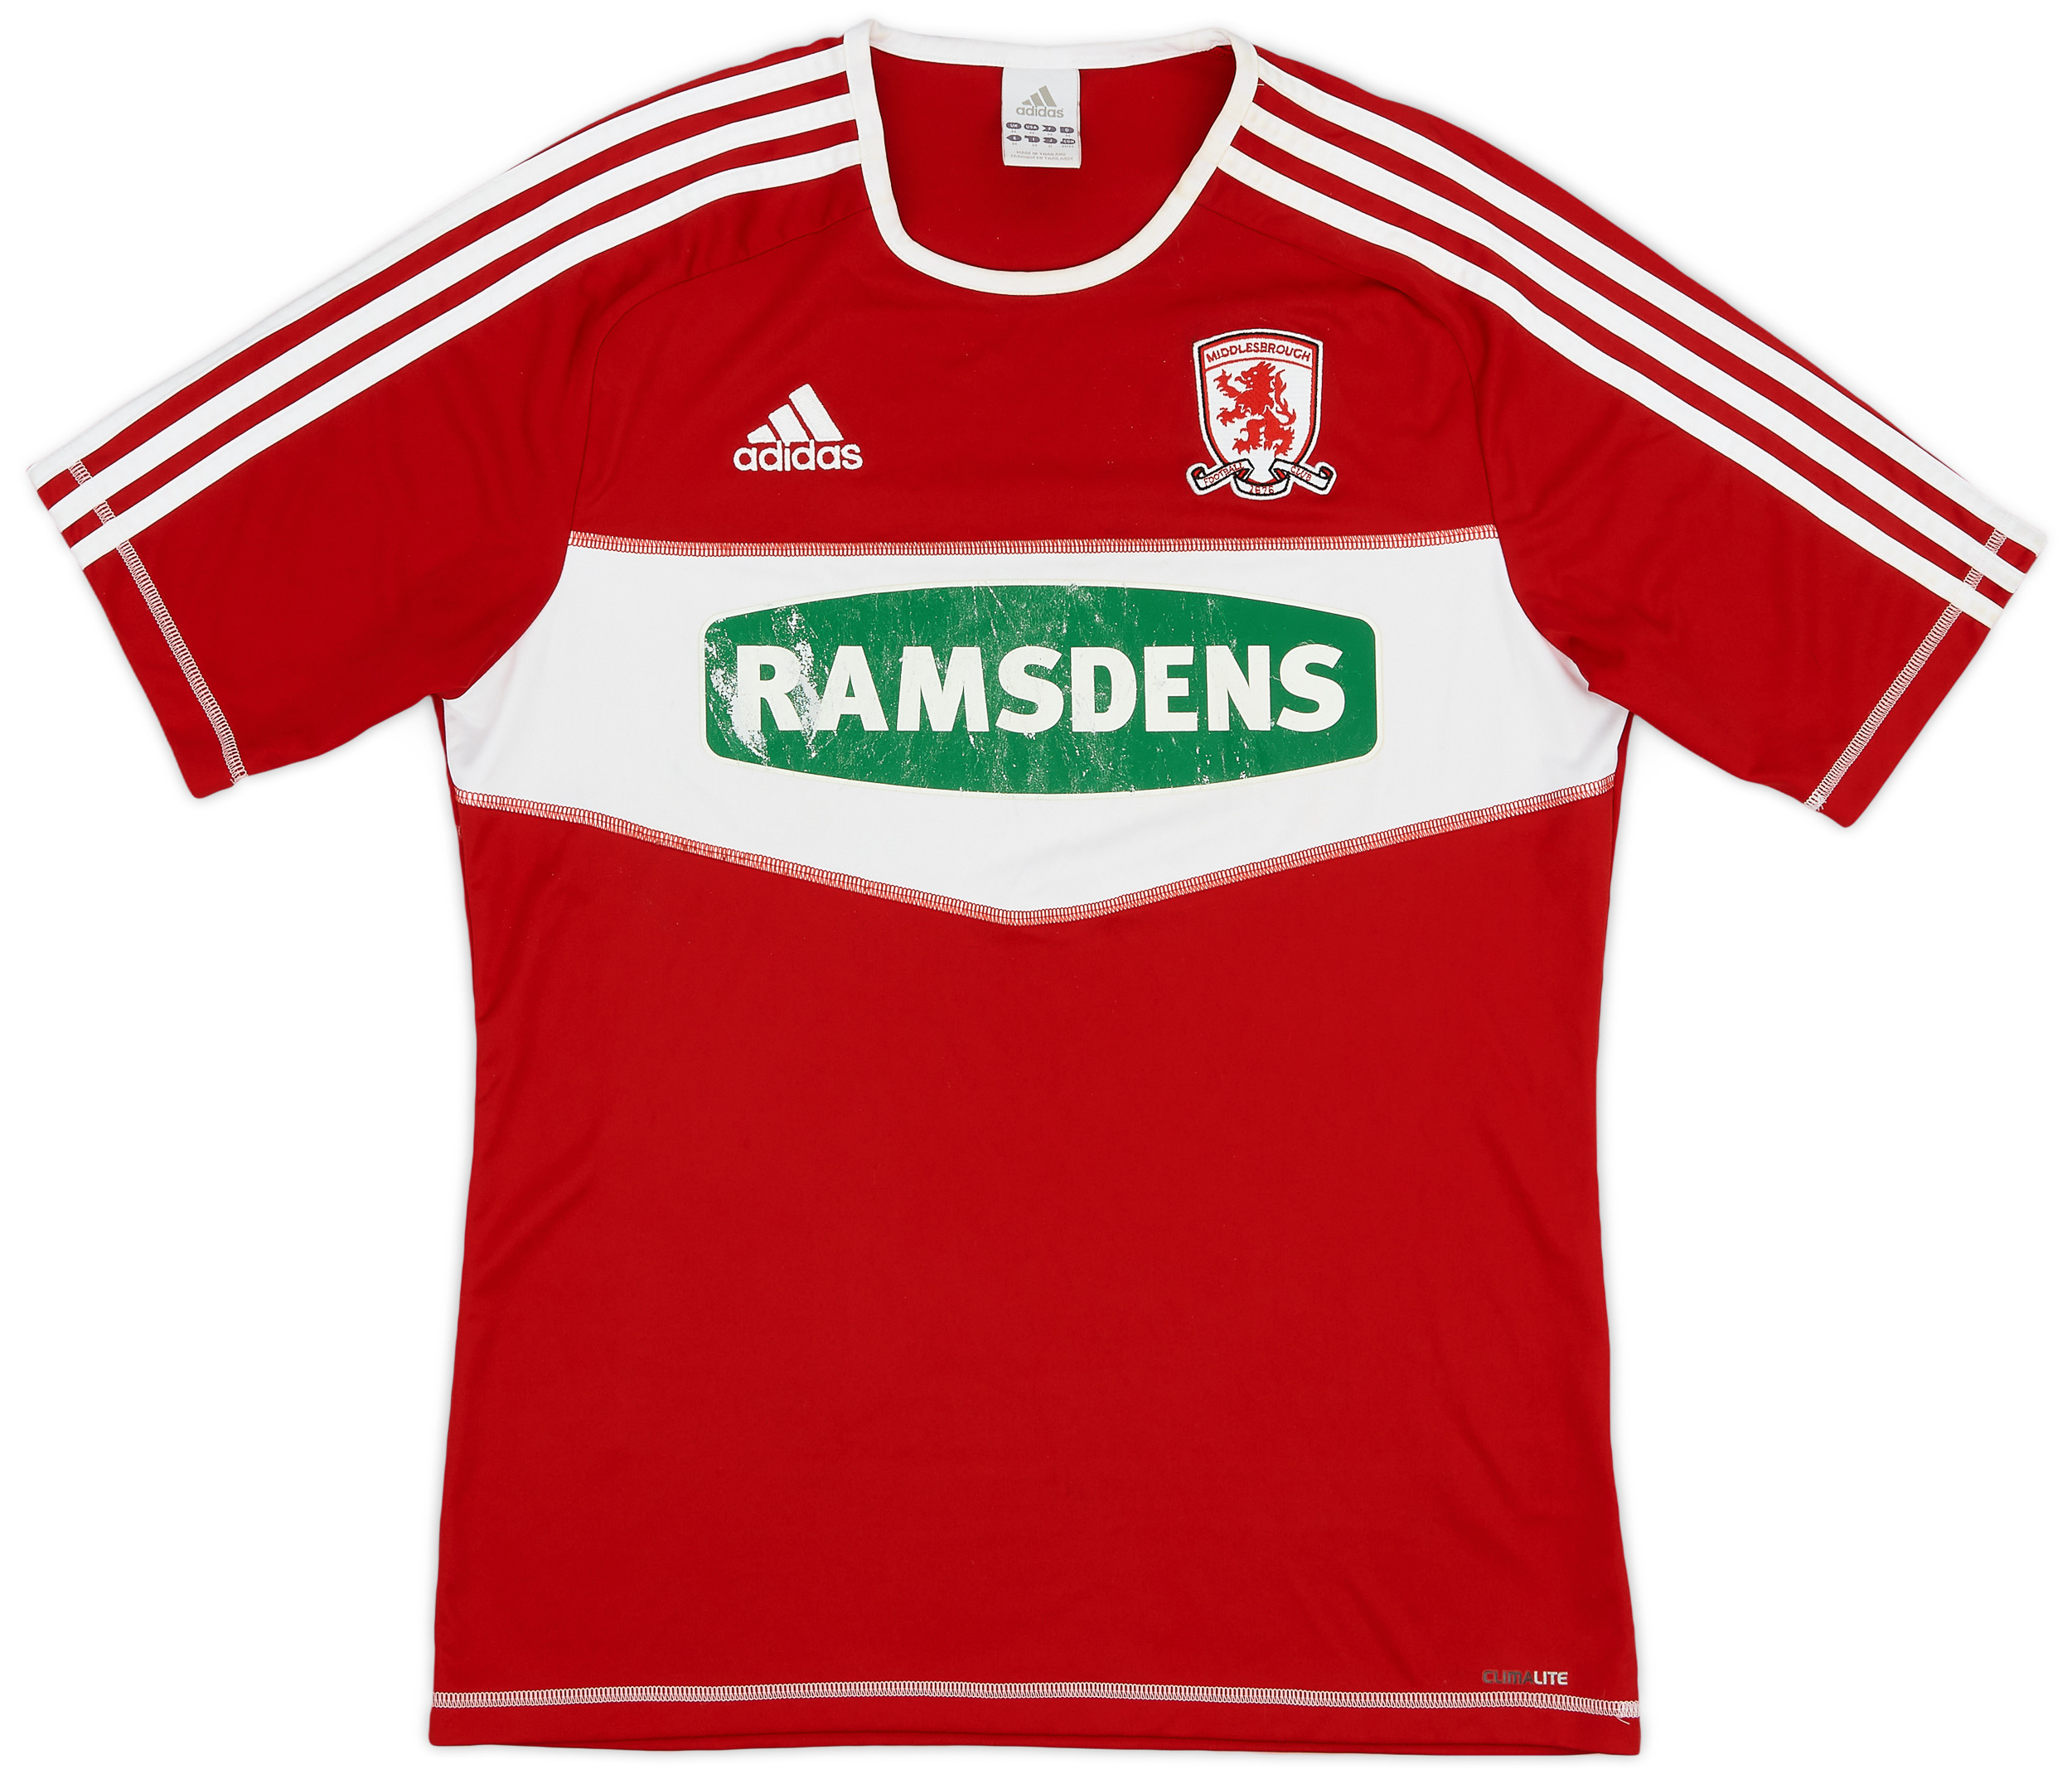 Middlesbrough  home camisa (Original)